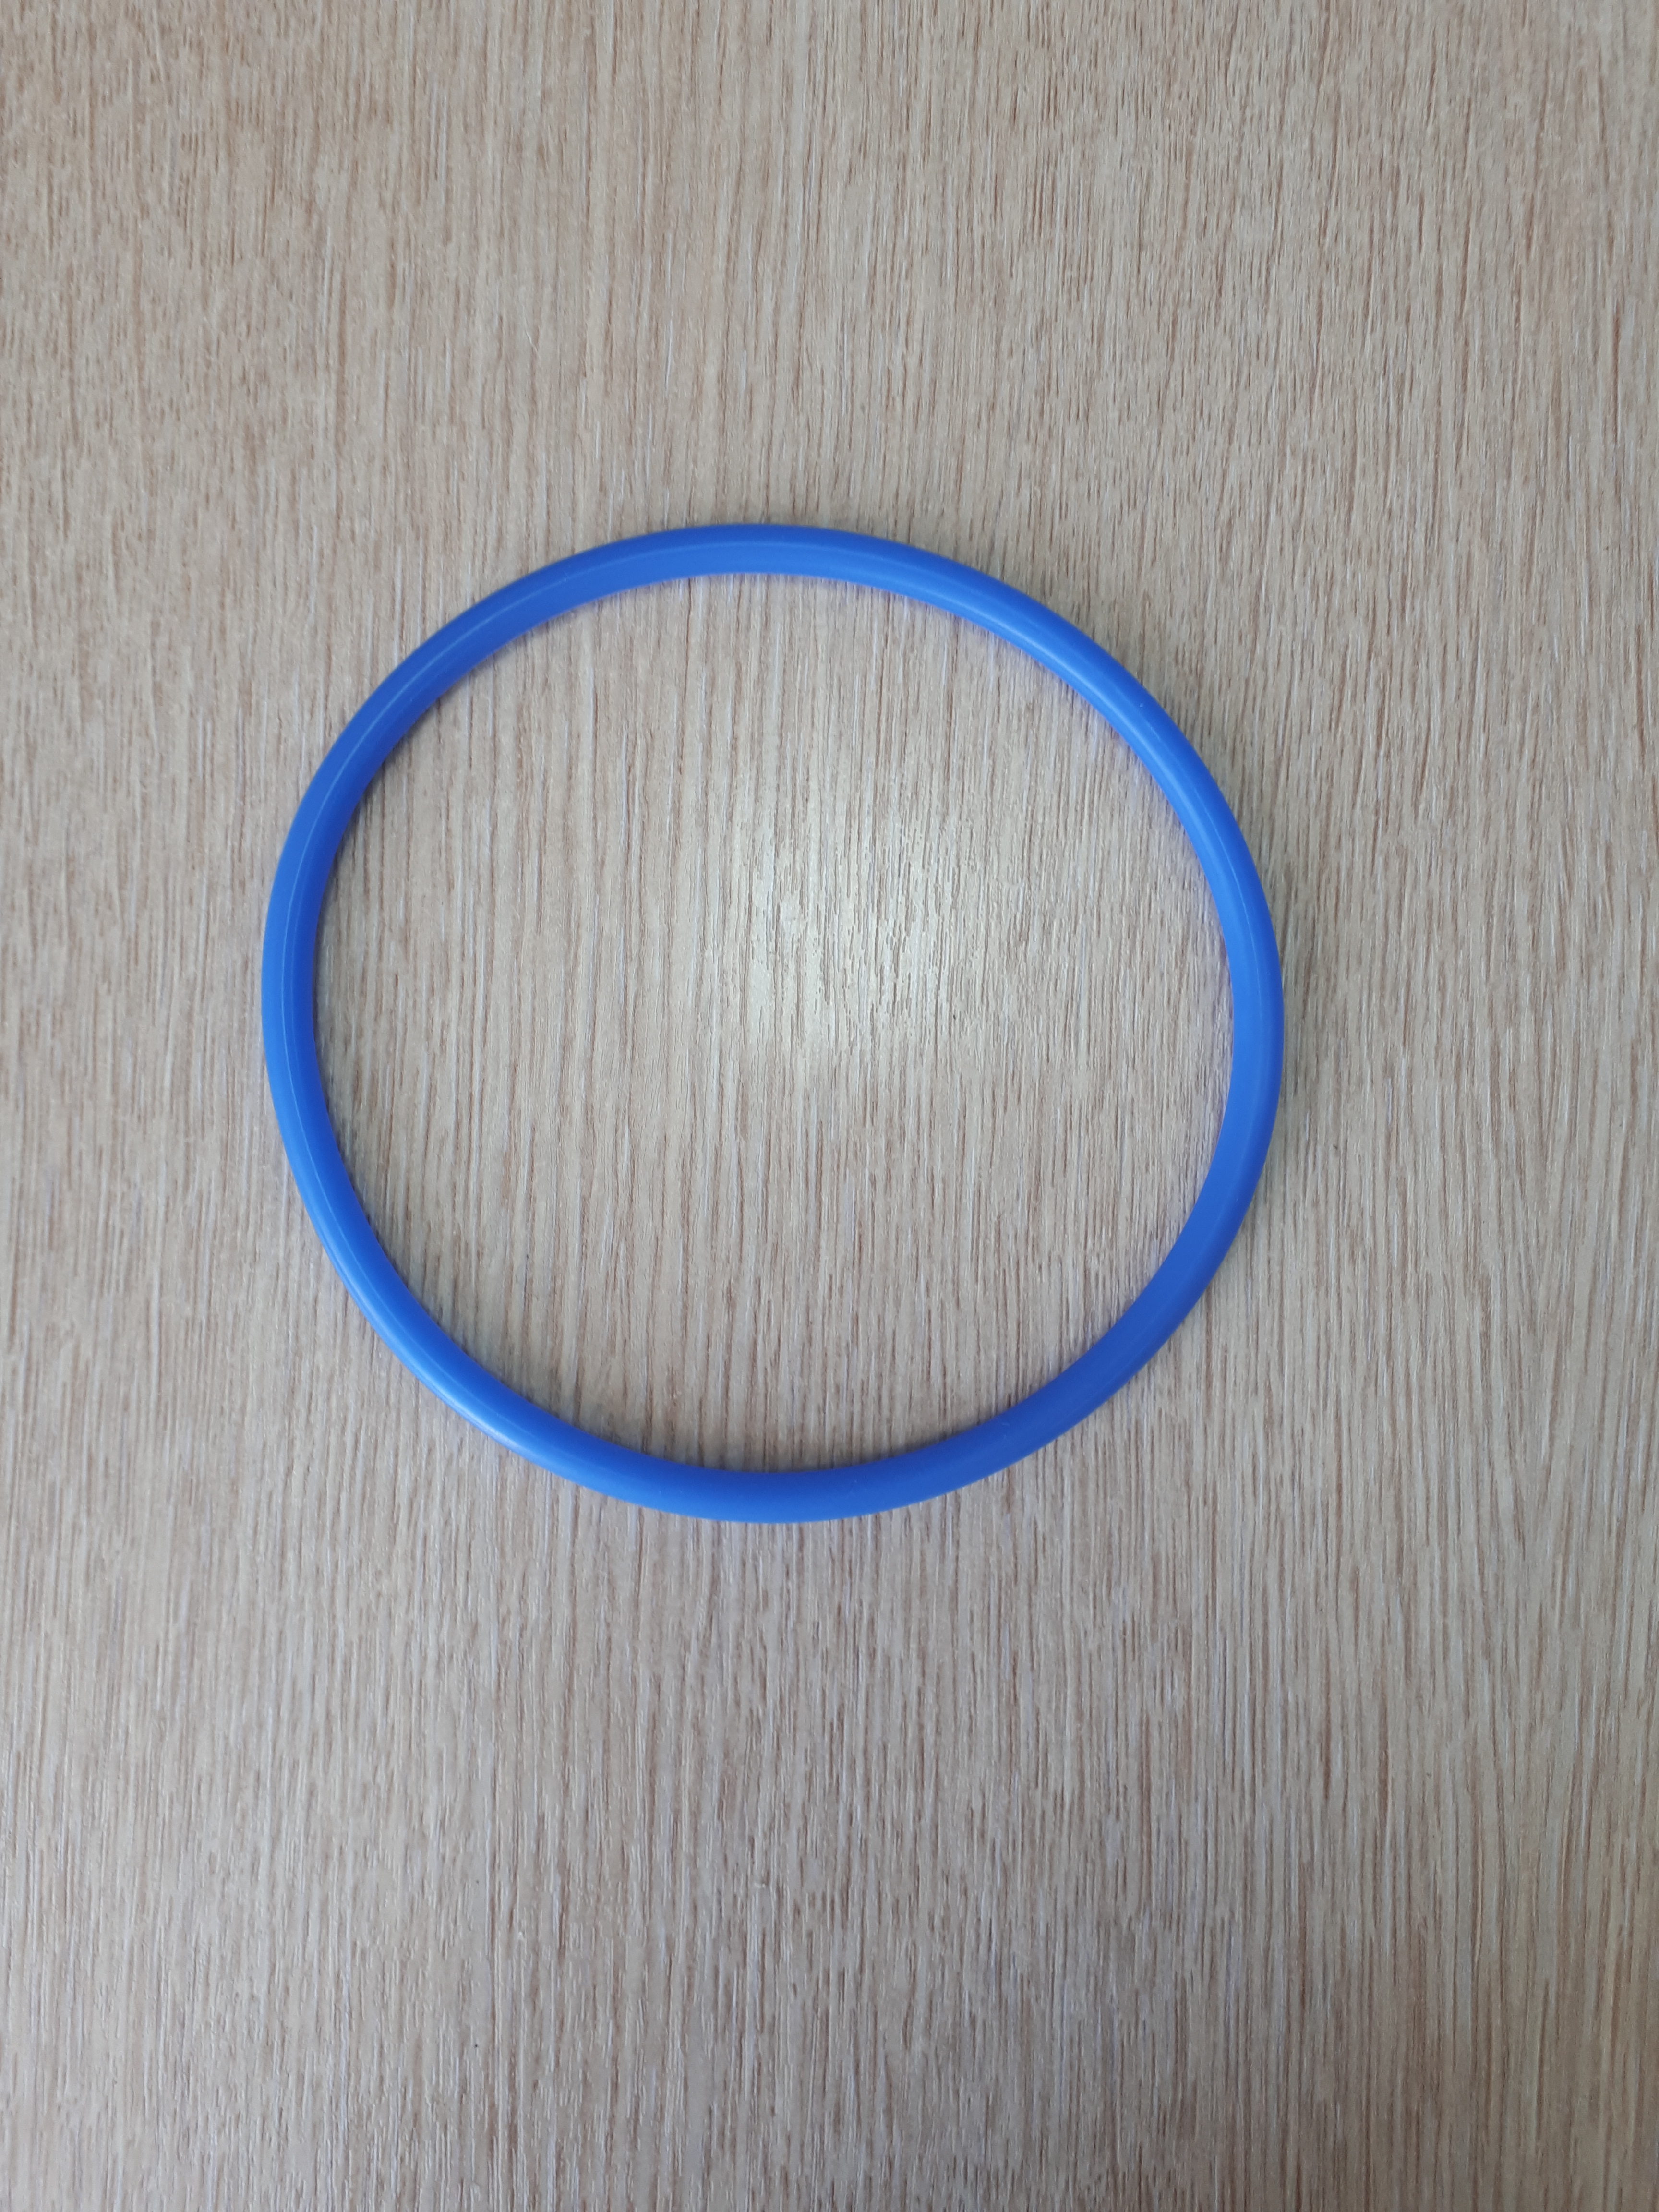 Кольцо упл. бензонасоса 405дв. (круг.сечение) силикон син.